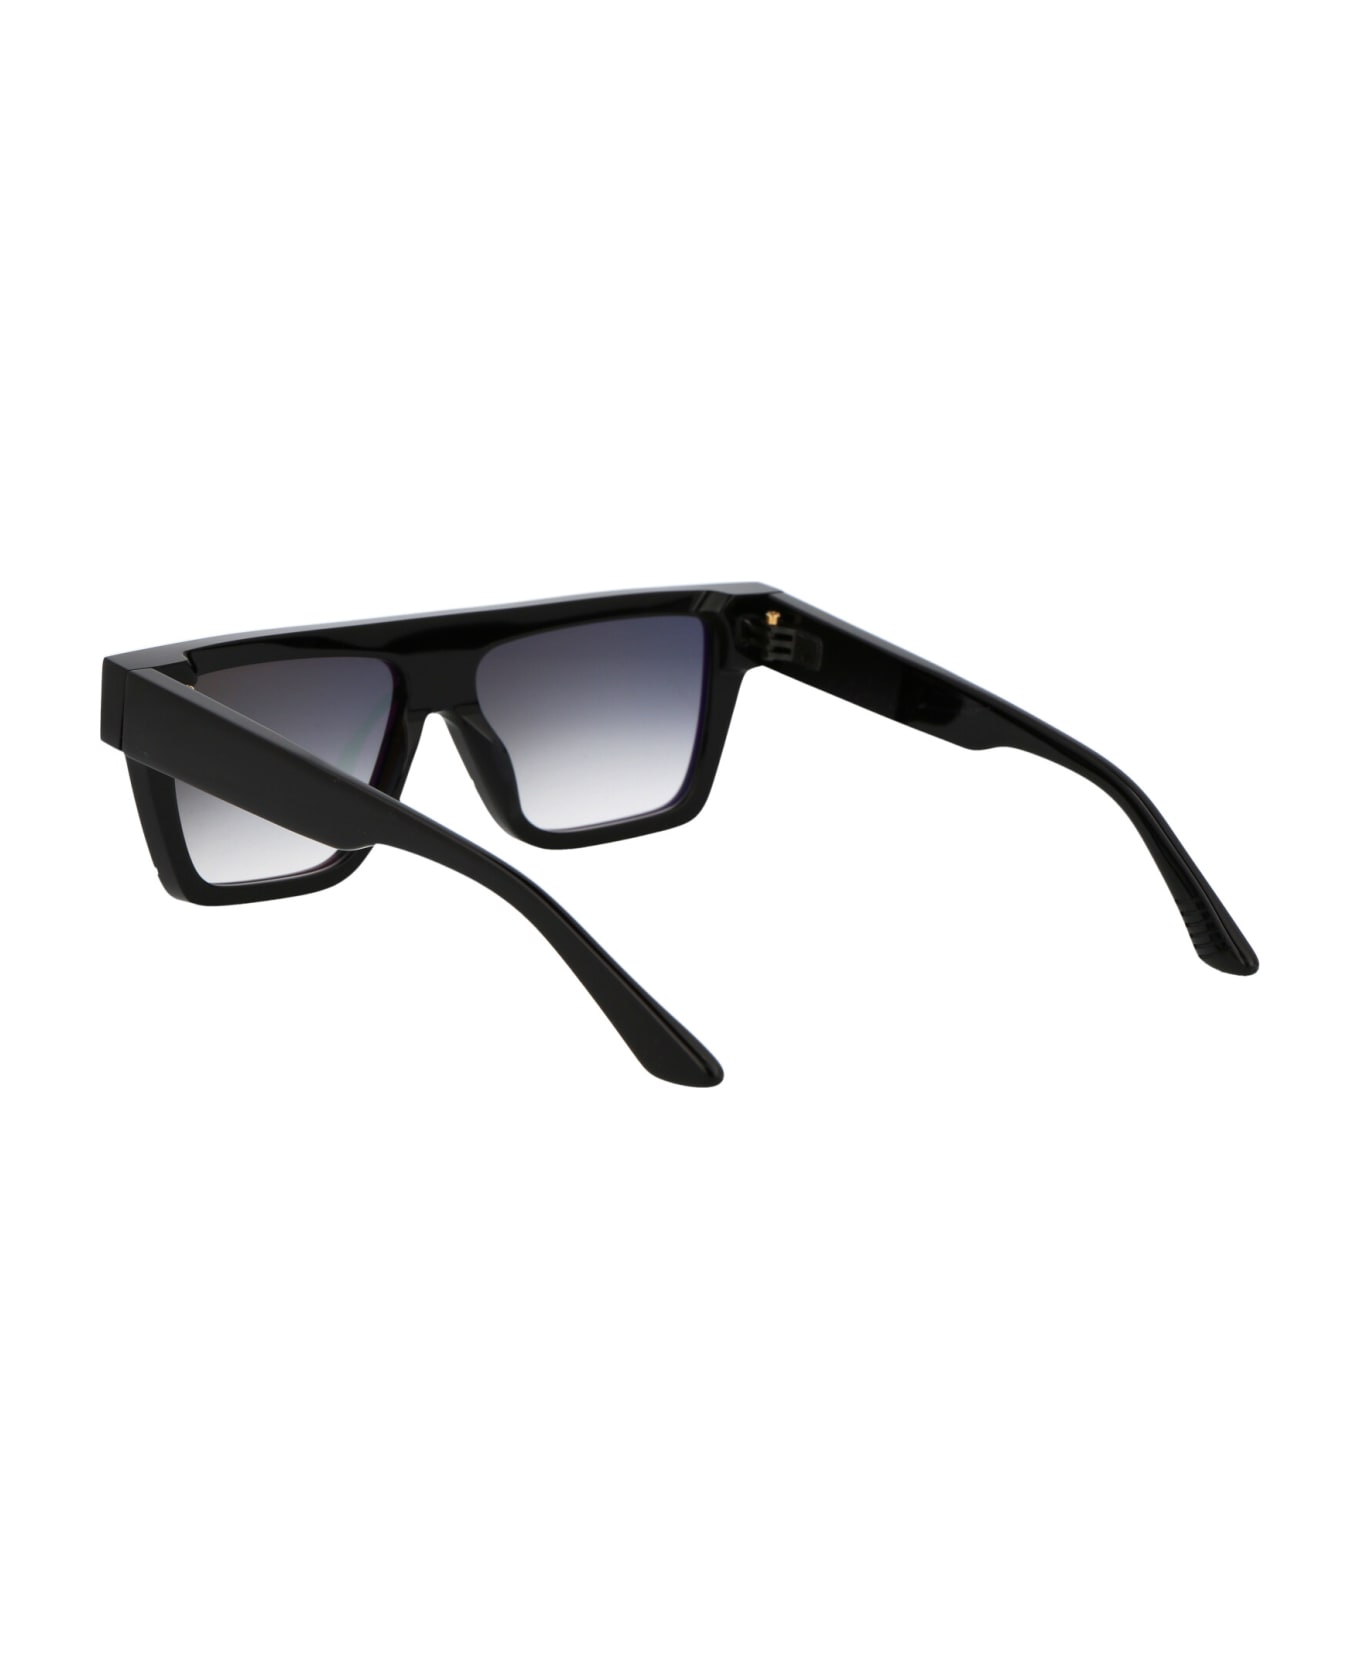 Yohji Yamamoto Slook 002 Sunglasses - boss brown sunglasses